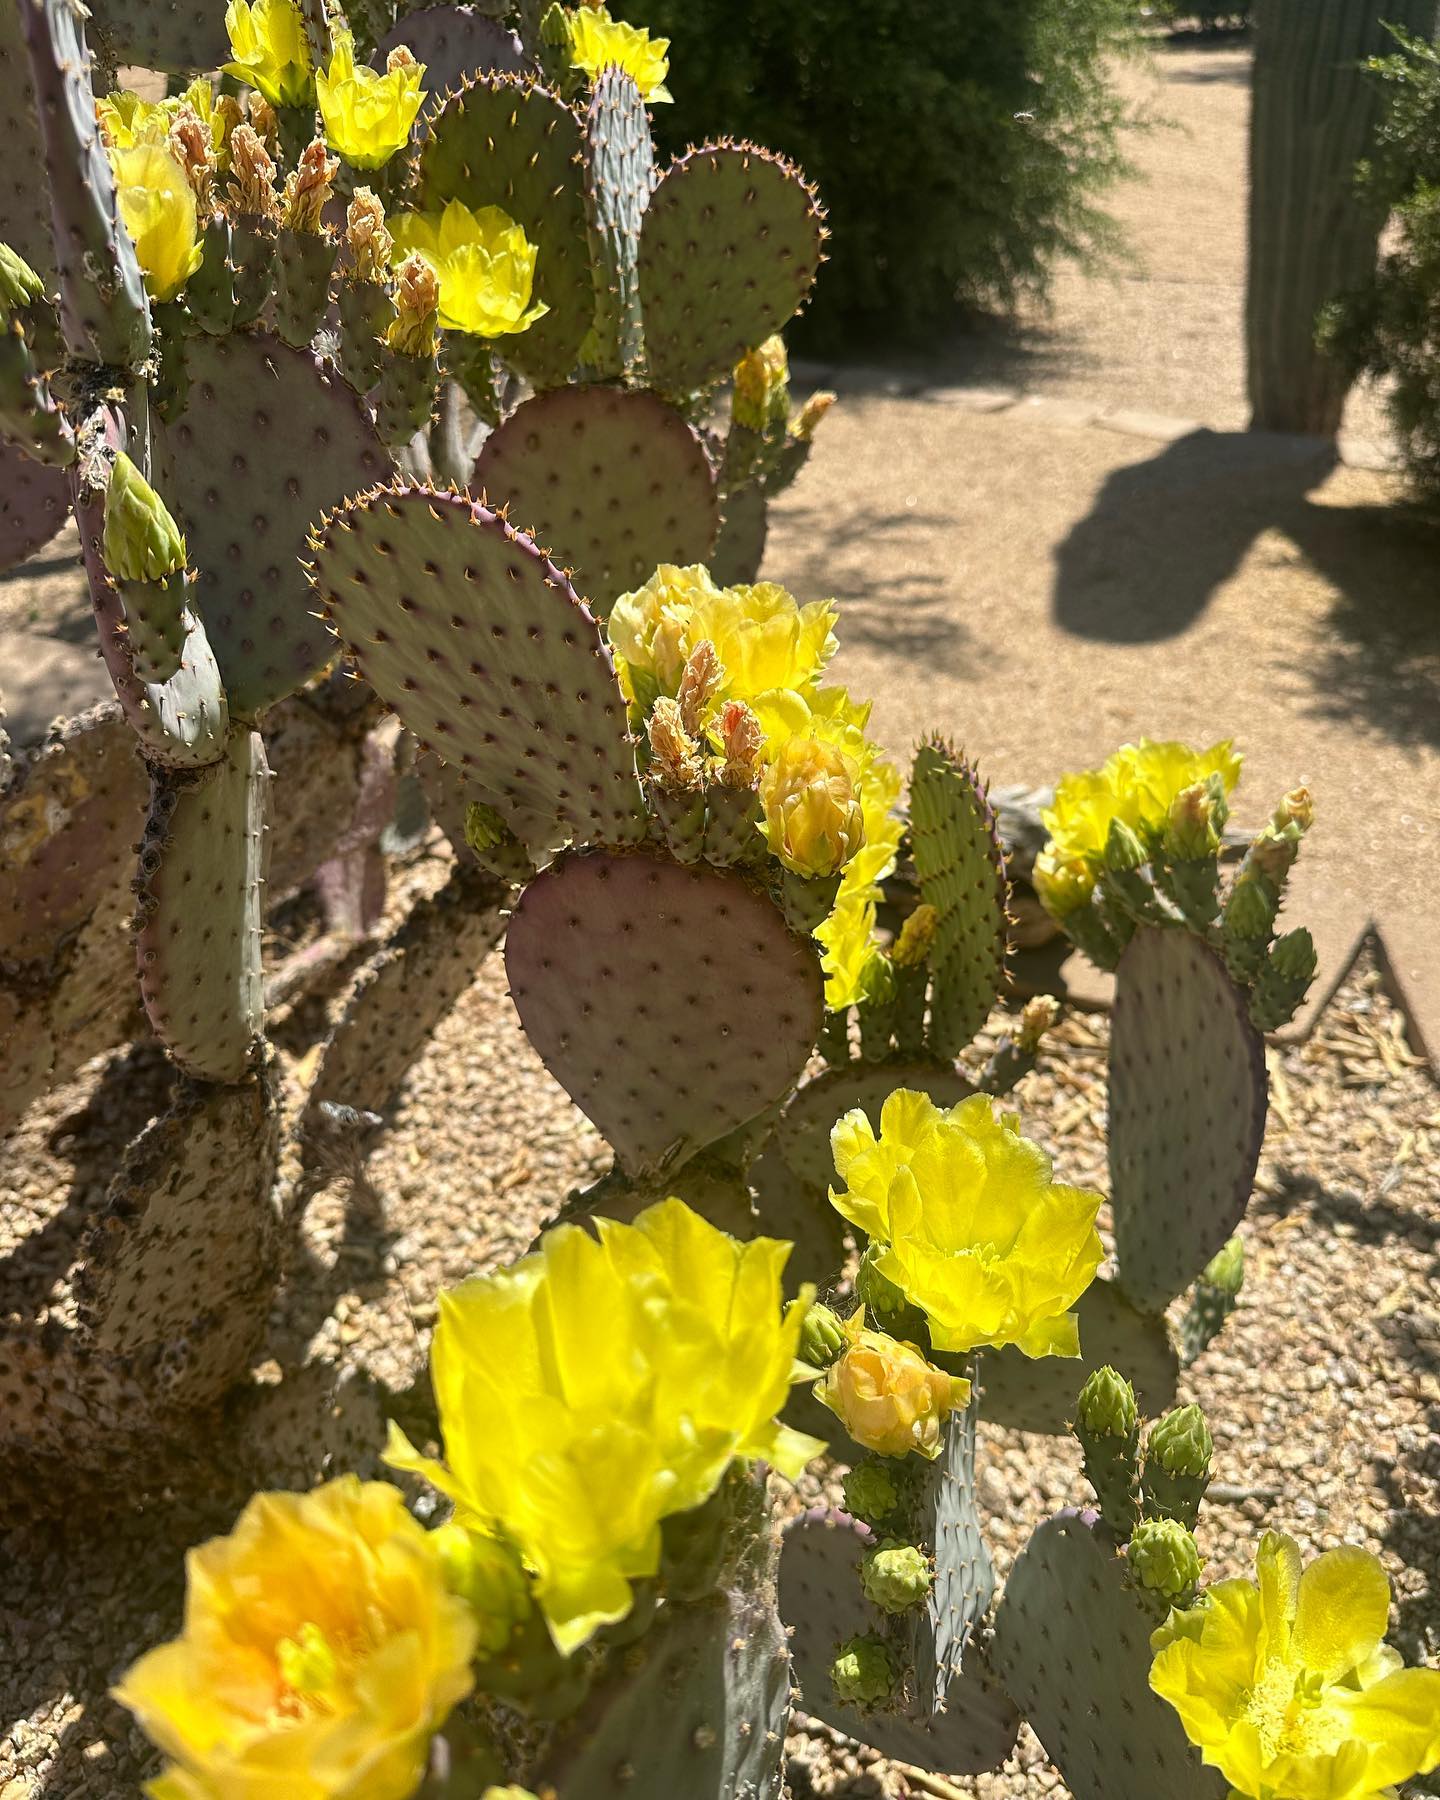 cactus_flowers